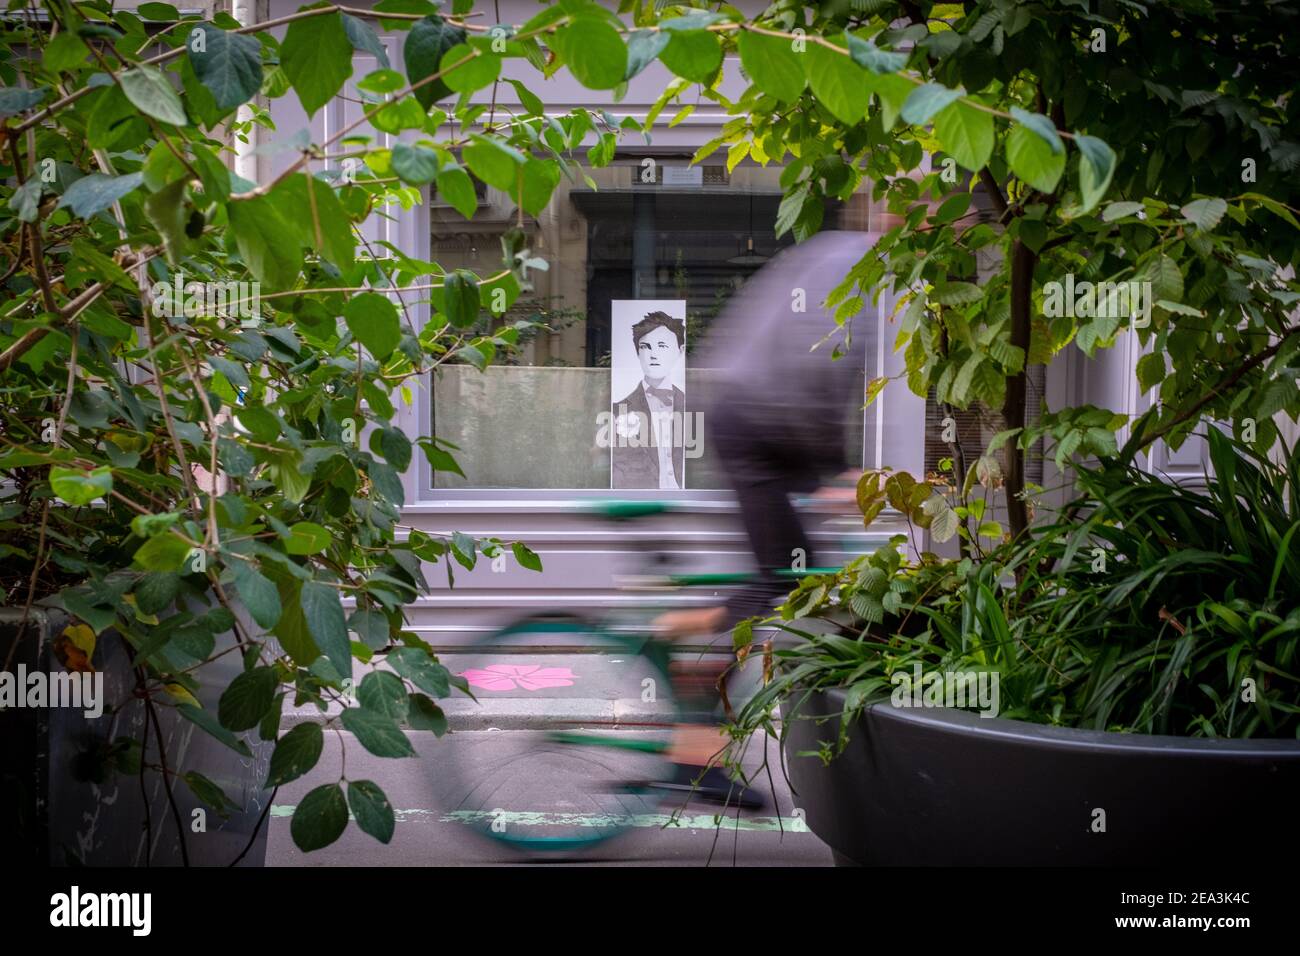 Il movimento offuscava l'uomo irriconoscibile che passava davanti a una finestra In cui c'è l'immagine del poeta Rimbaud in Parigi Foto Stock